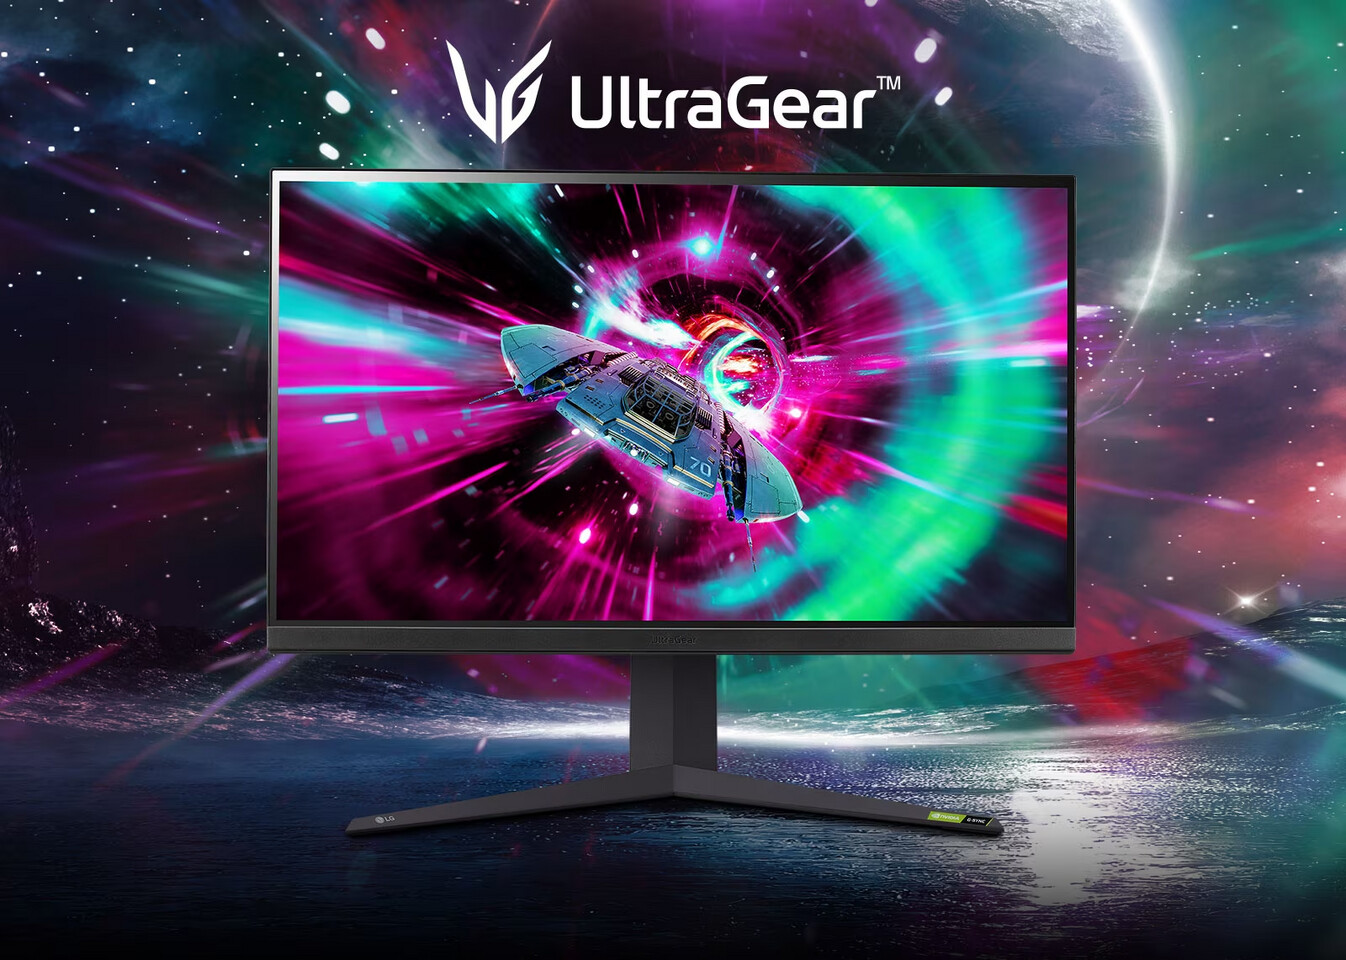 LG hé lộ hai màn hình chơi game UltraGear 4K mới